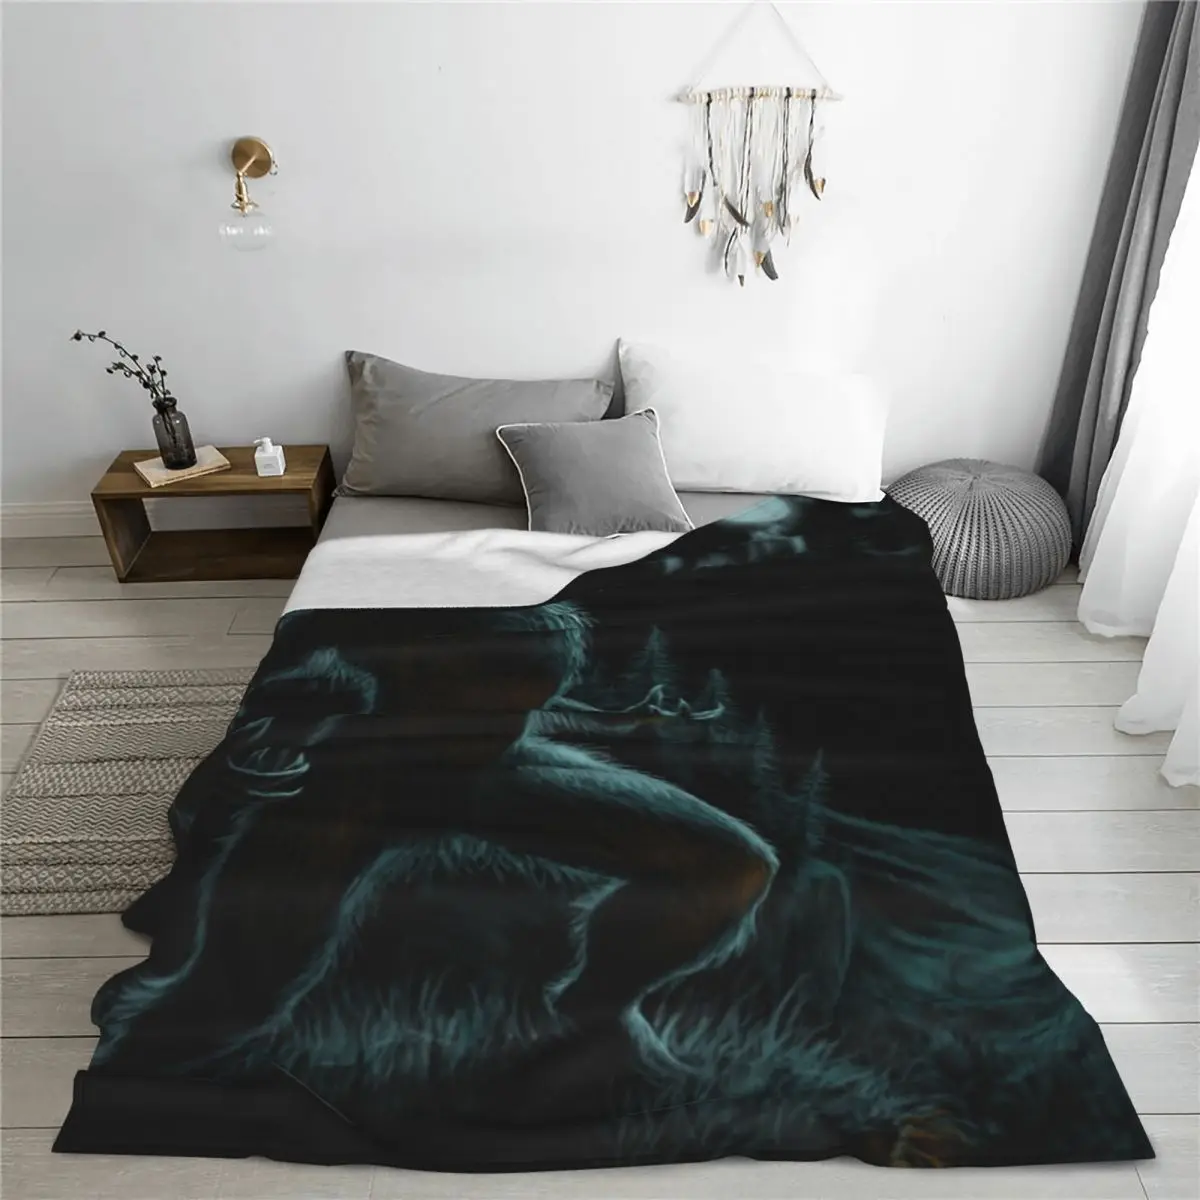 Вой оборотня Одеяло Покрывало на кровати Комплект кровати Чехол для дивана Диван-кровать Изображение 5 